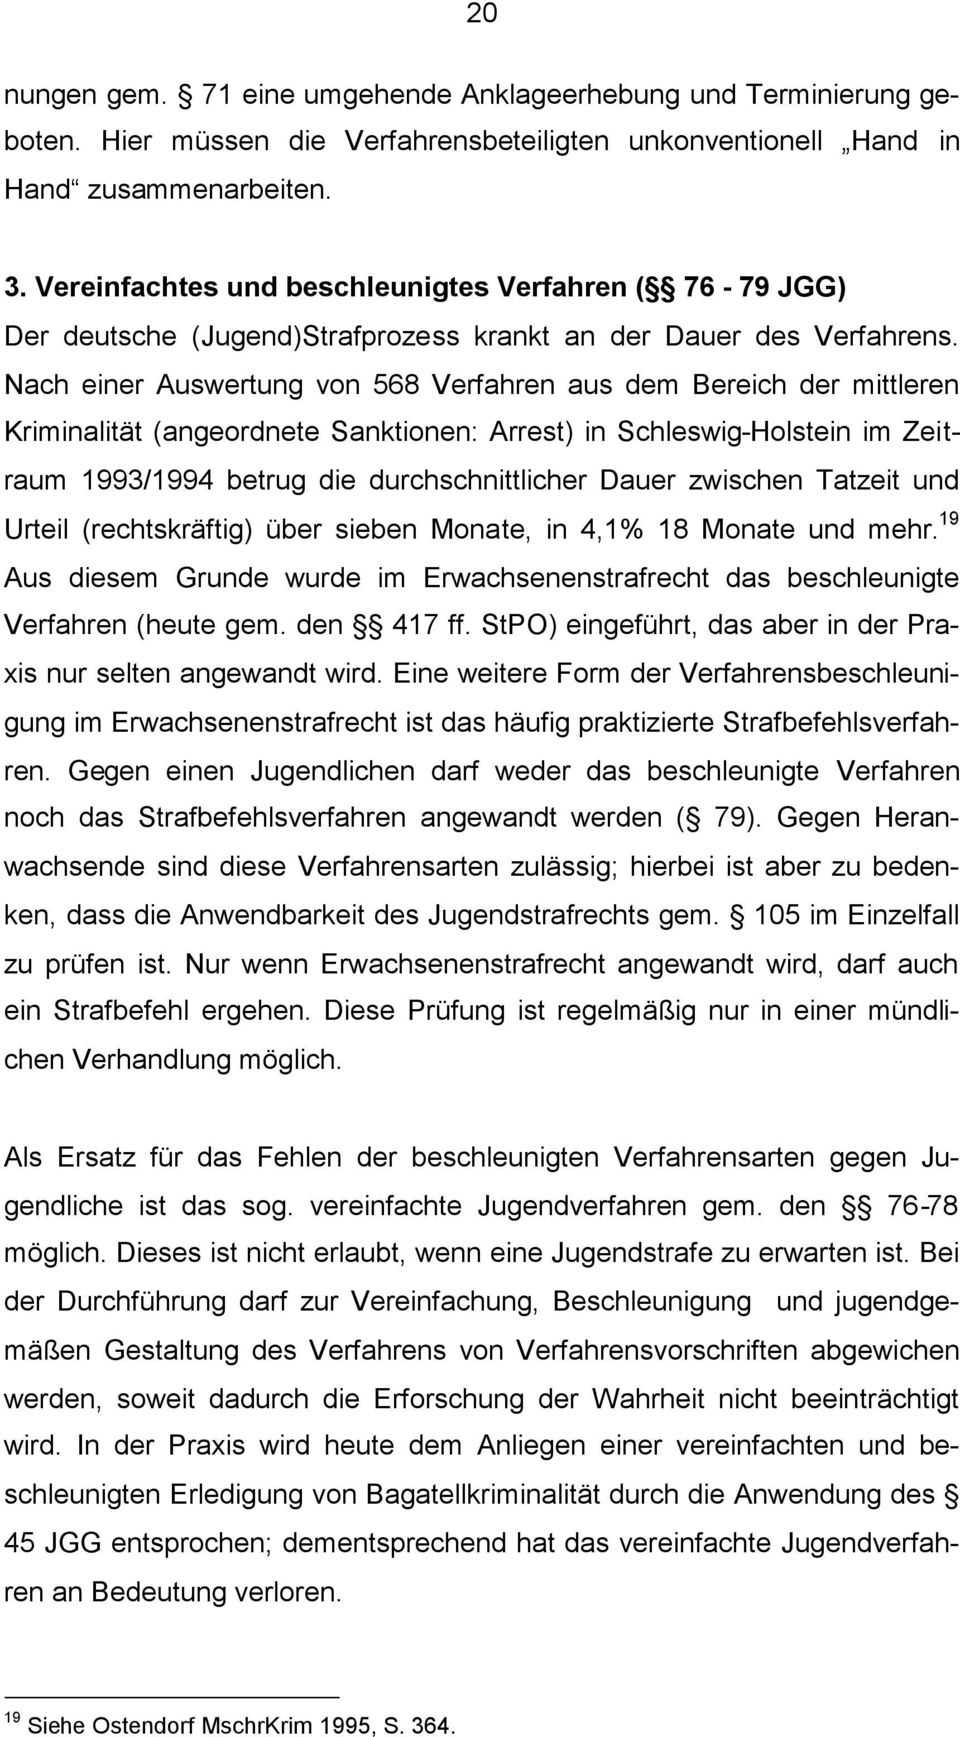 Nach einer Auswertung von 568 Verfahren aus dem Bereich der mittleren Kriminalität (angeordnete Sanktionen: Arrest) in Schleswig-Holstein im Zeitraum 1993/1994 betrug die durchschnittlicher Dauer